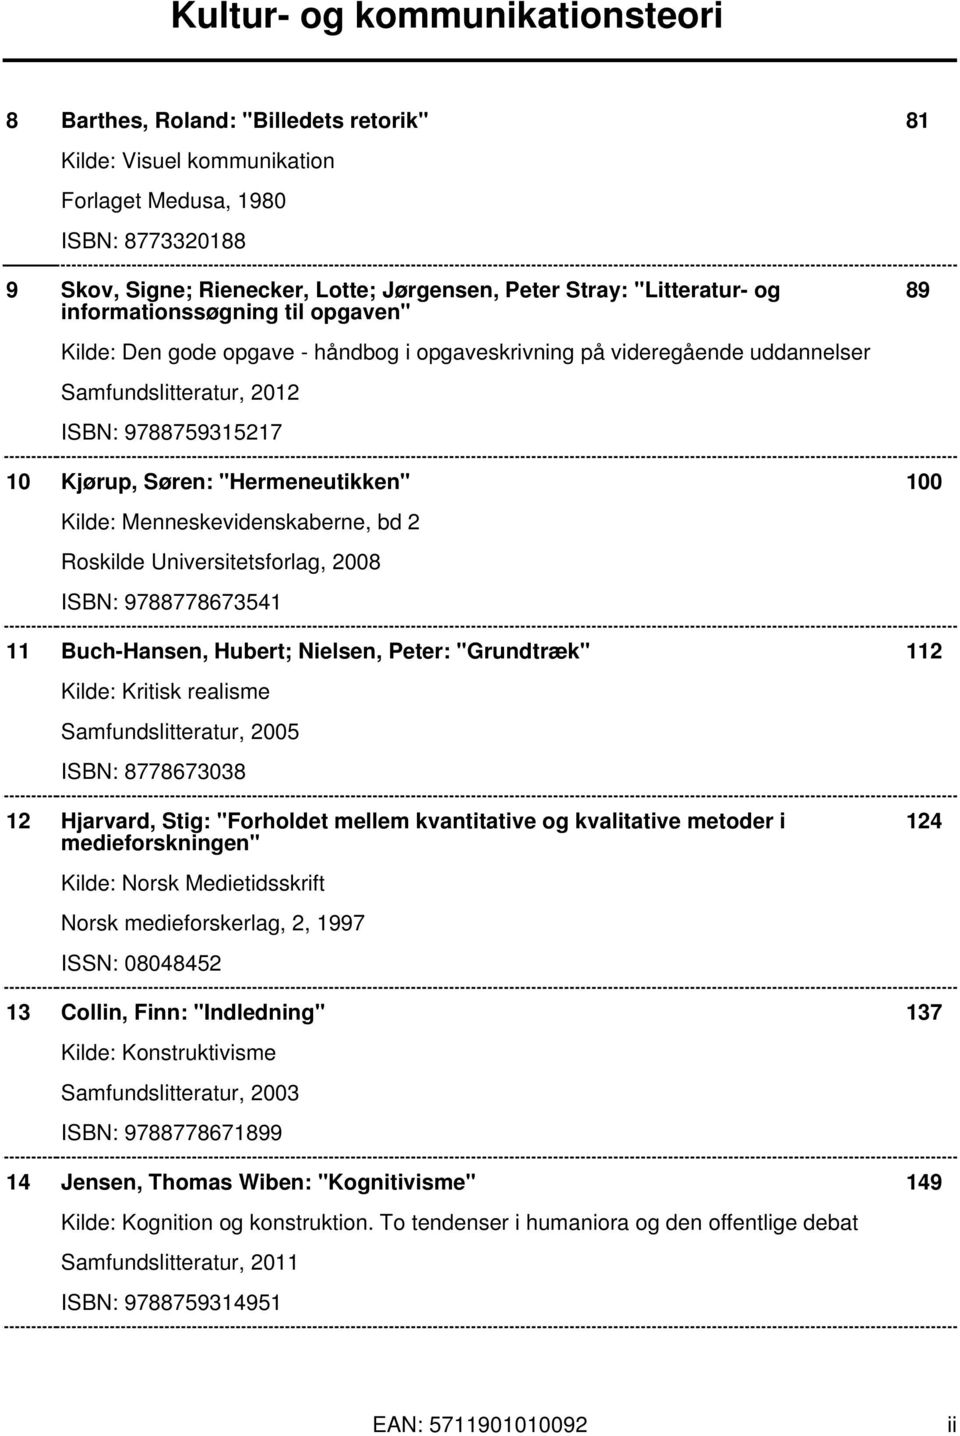 Kilde: Menneskevidenskaberne, bd 2 Roskilde Universitetsforlag, 2008 ISBN: 9788778673541 11 Buch-Hansen, Hubert; Nielsen, Peter: "Grundtræk" 112 Kilde: Kritisk realisme Samfundslitteratur, 2005 ISBN: